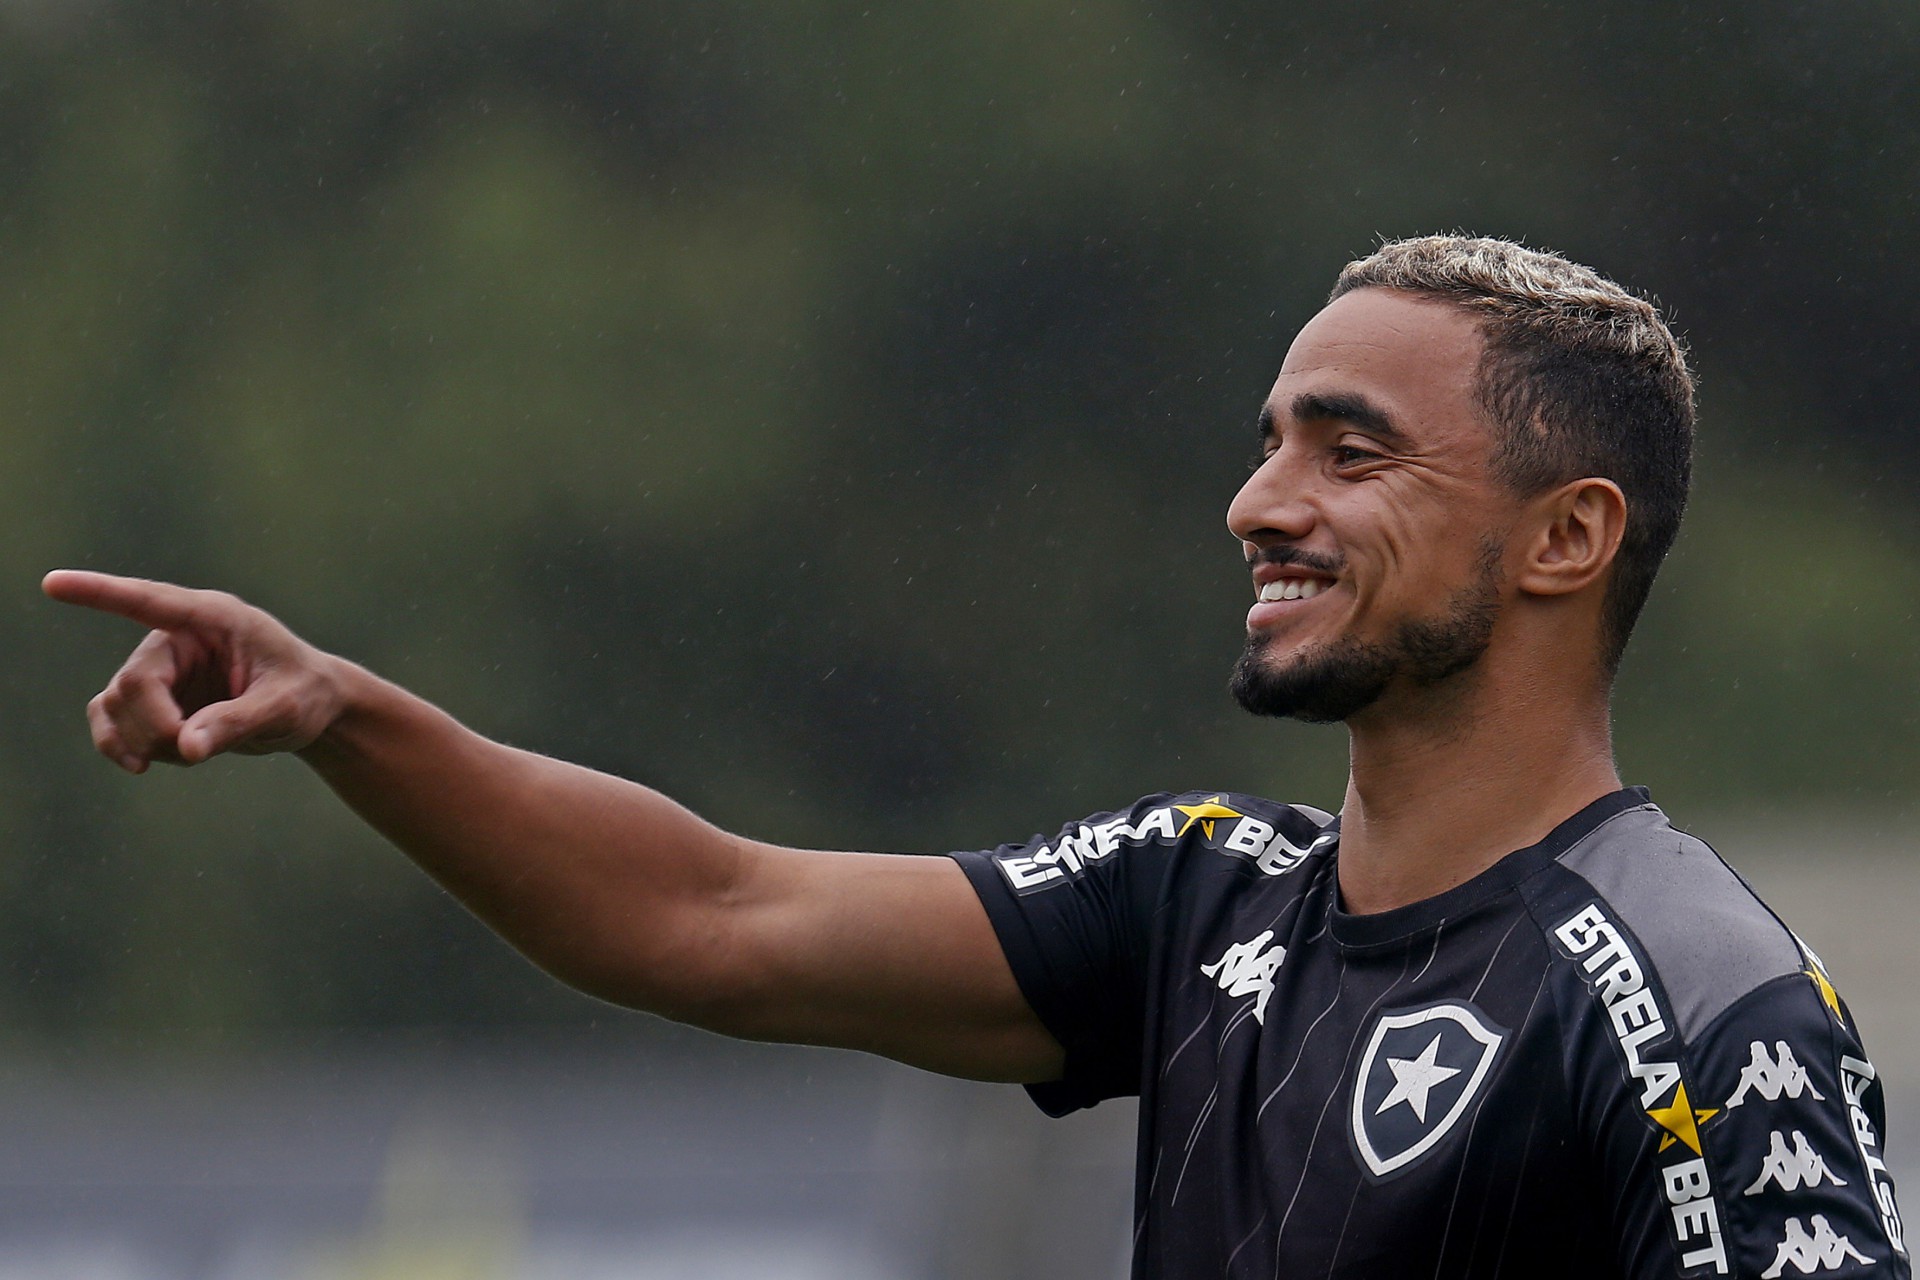 Rafael admite expectativa por reforços e vê Botafogo forte com SAF: ‘É bem perto do que vi na Europa’